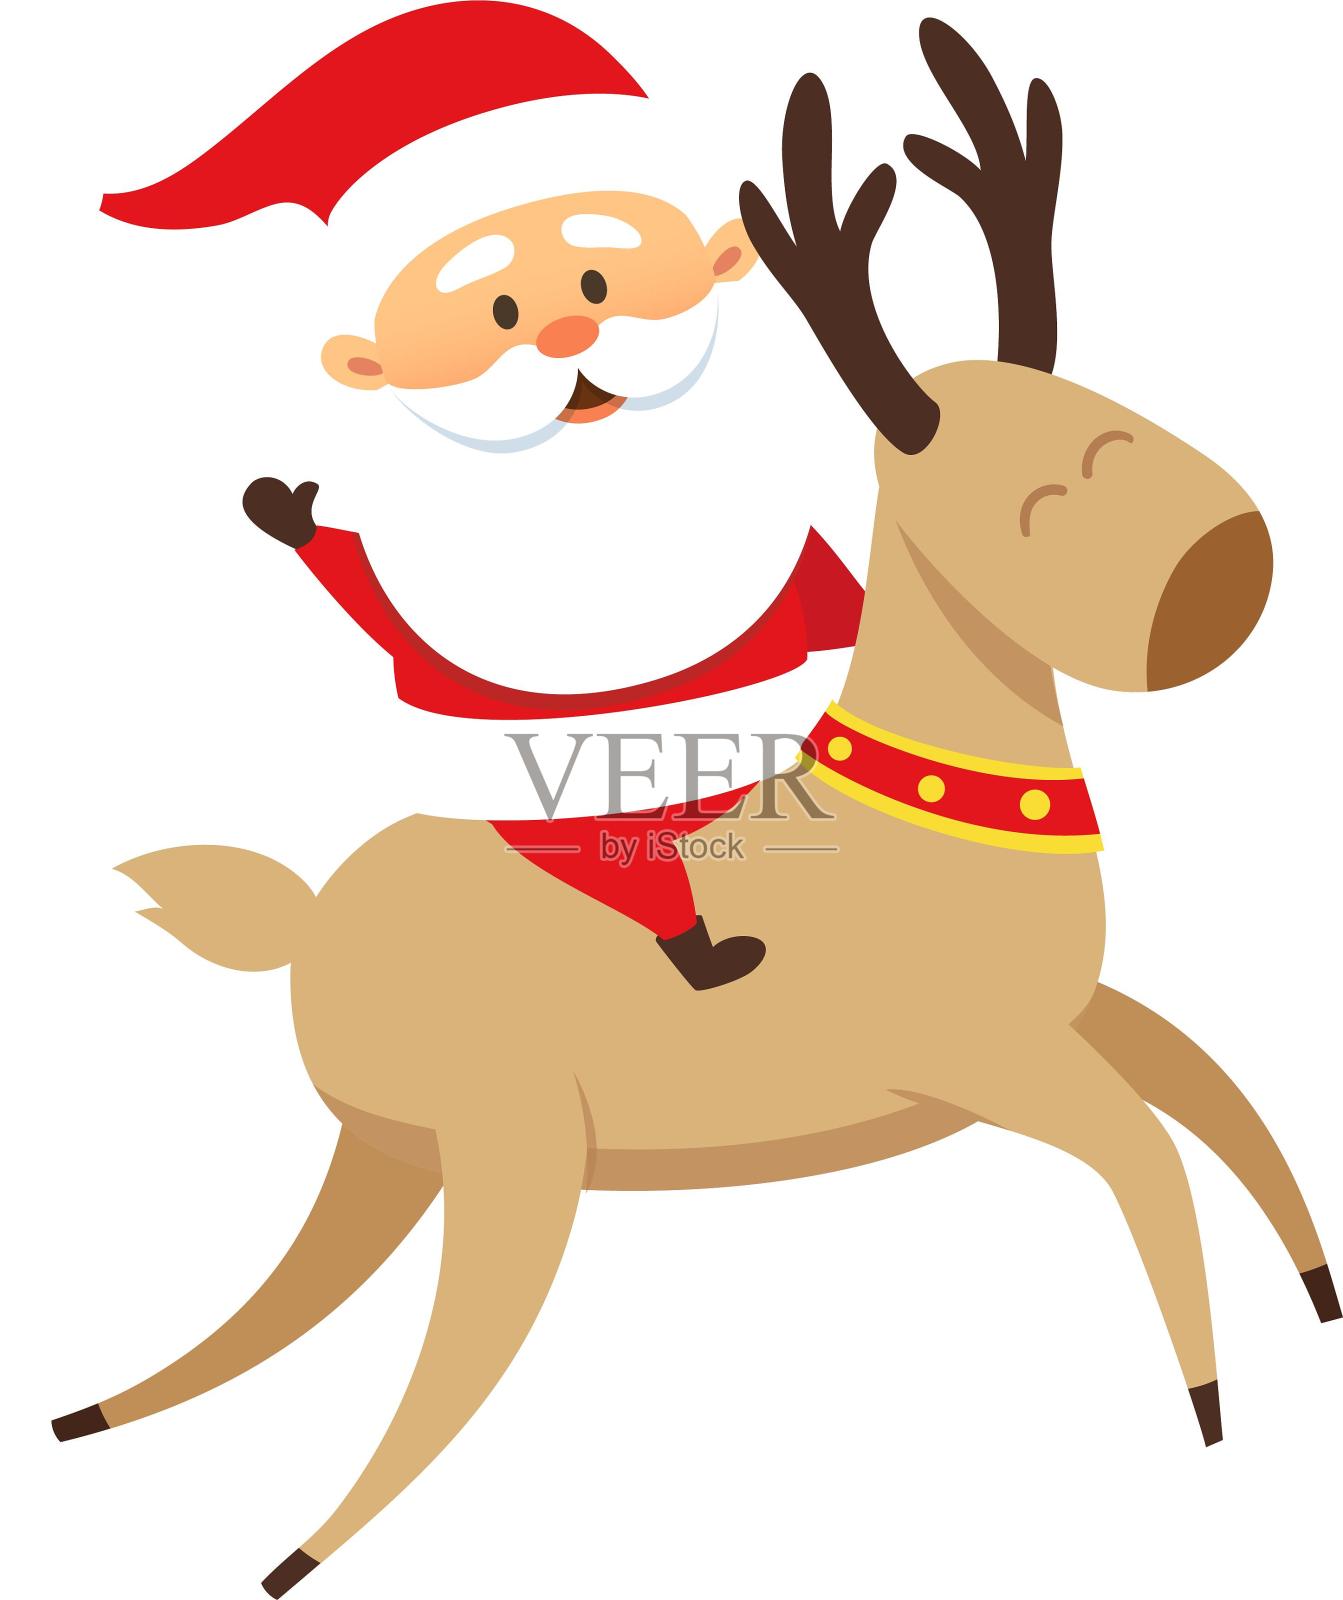 圣诞节圣诞老人骑麋鹿开心可爱彩色卡通扁平元素设计元素图片